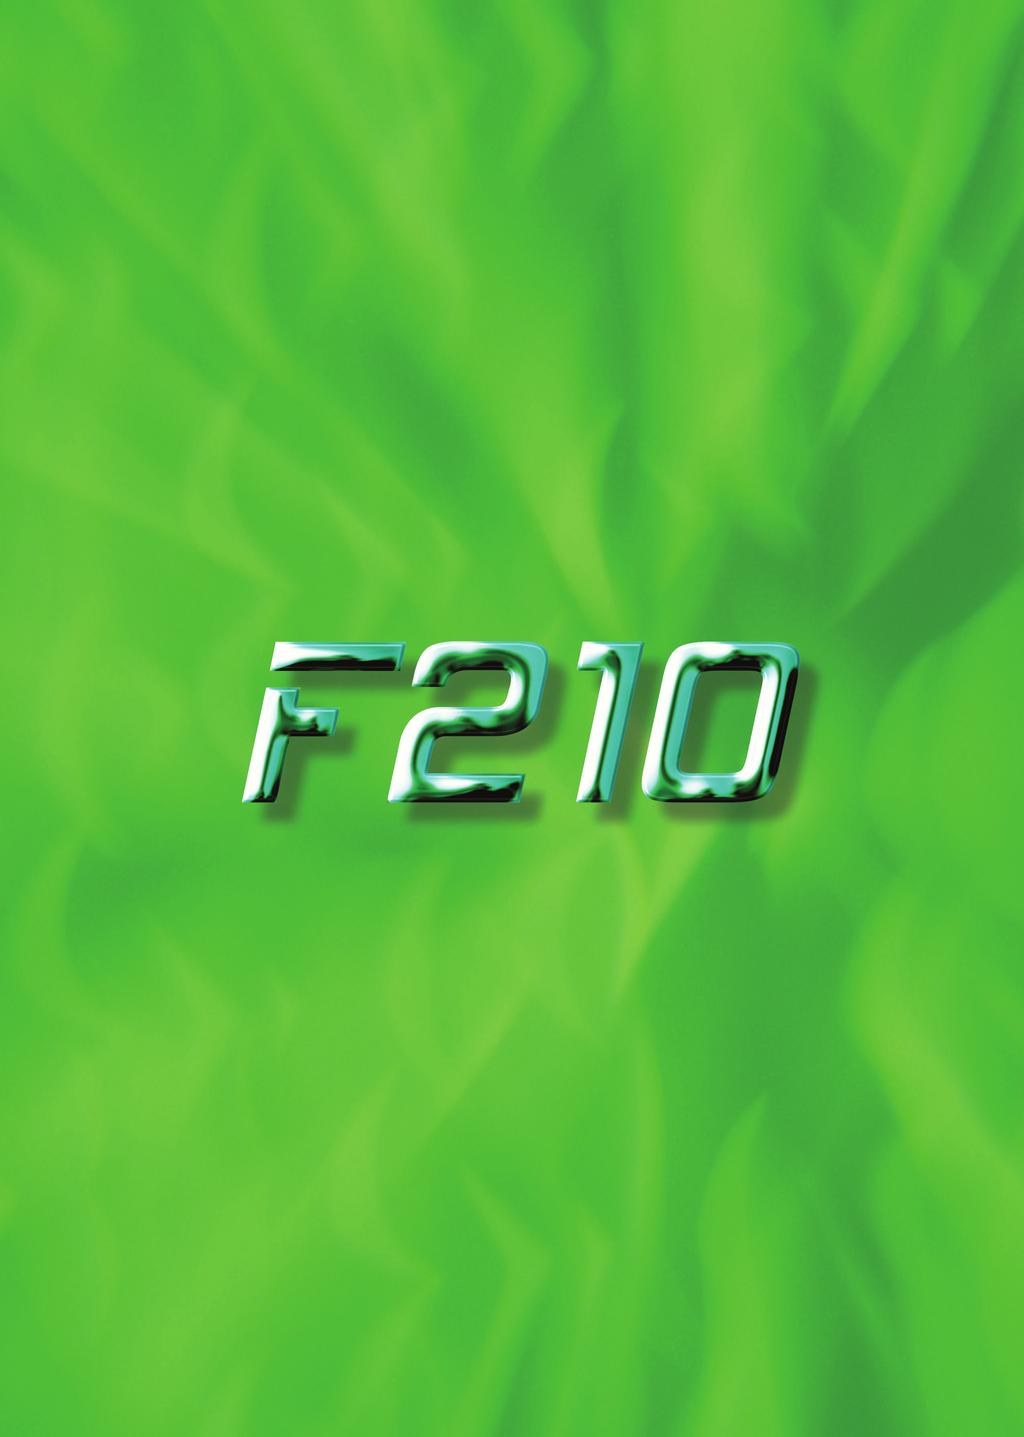 F210 Vision Sensor Flow